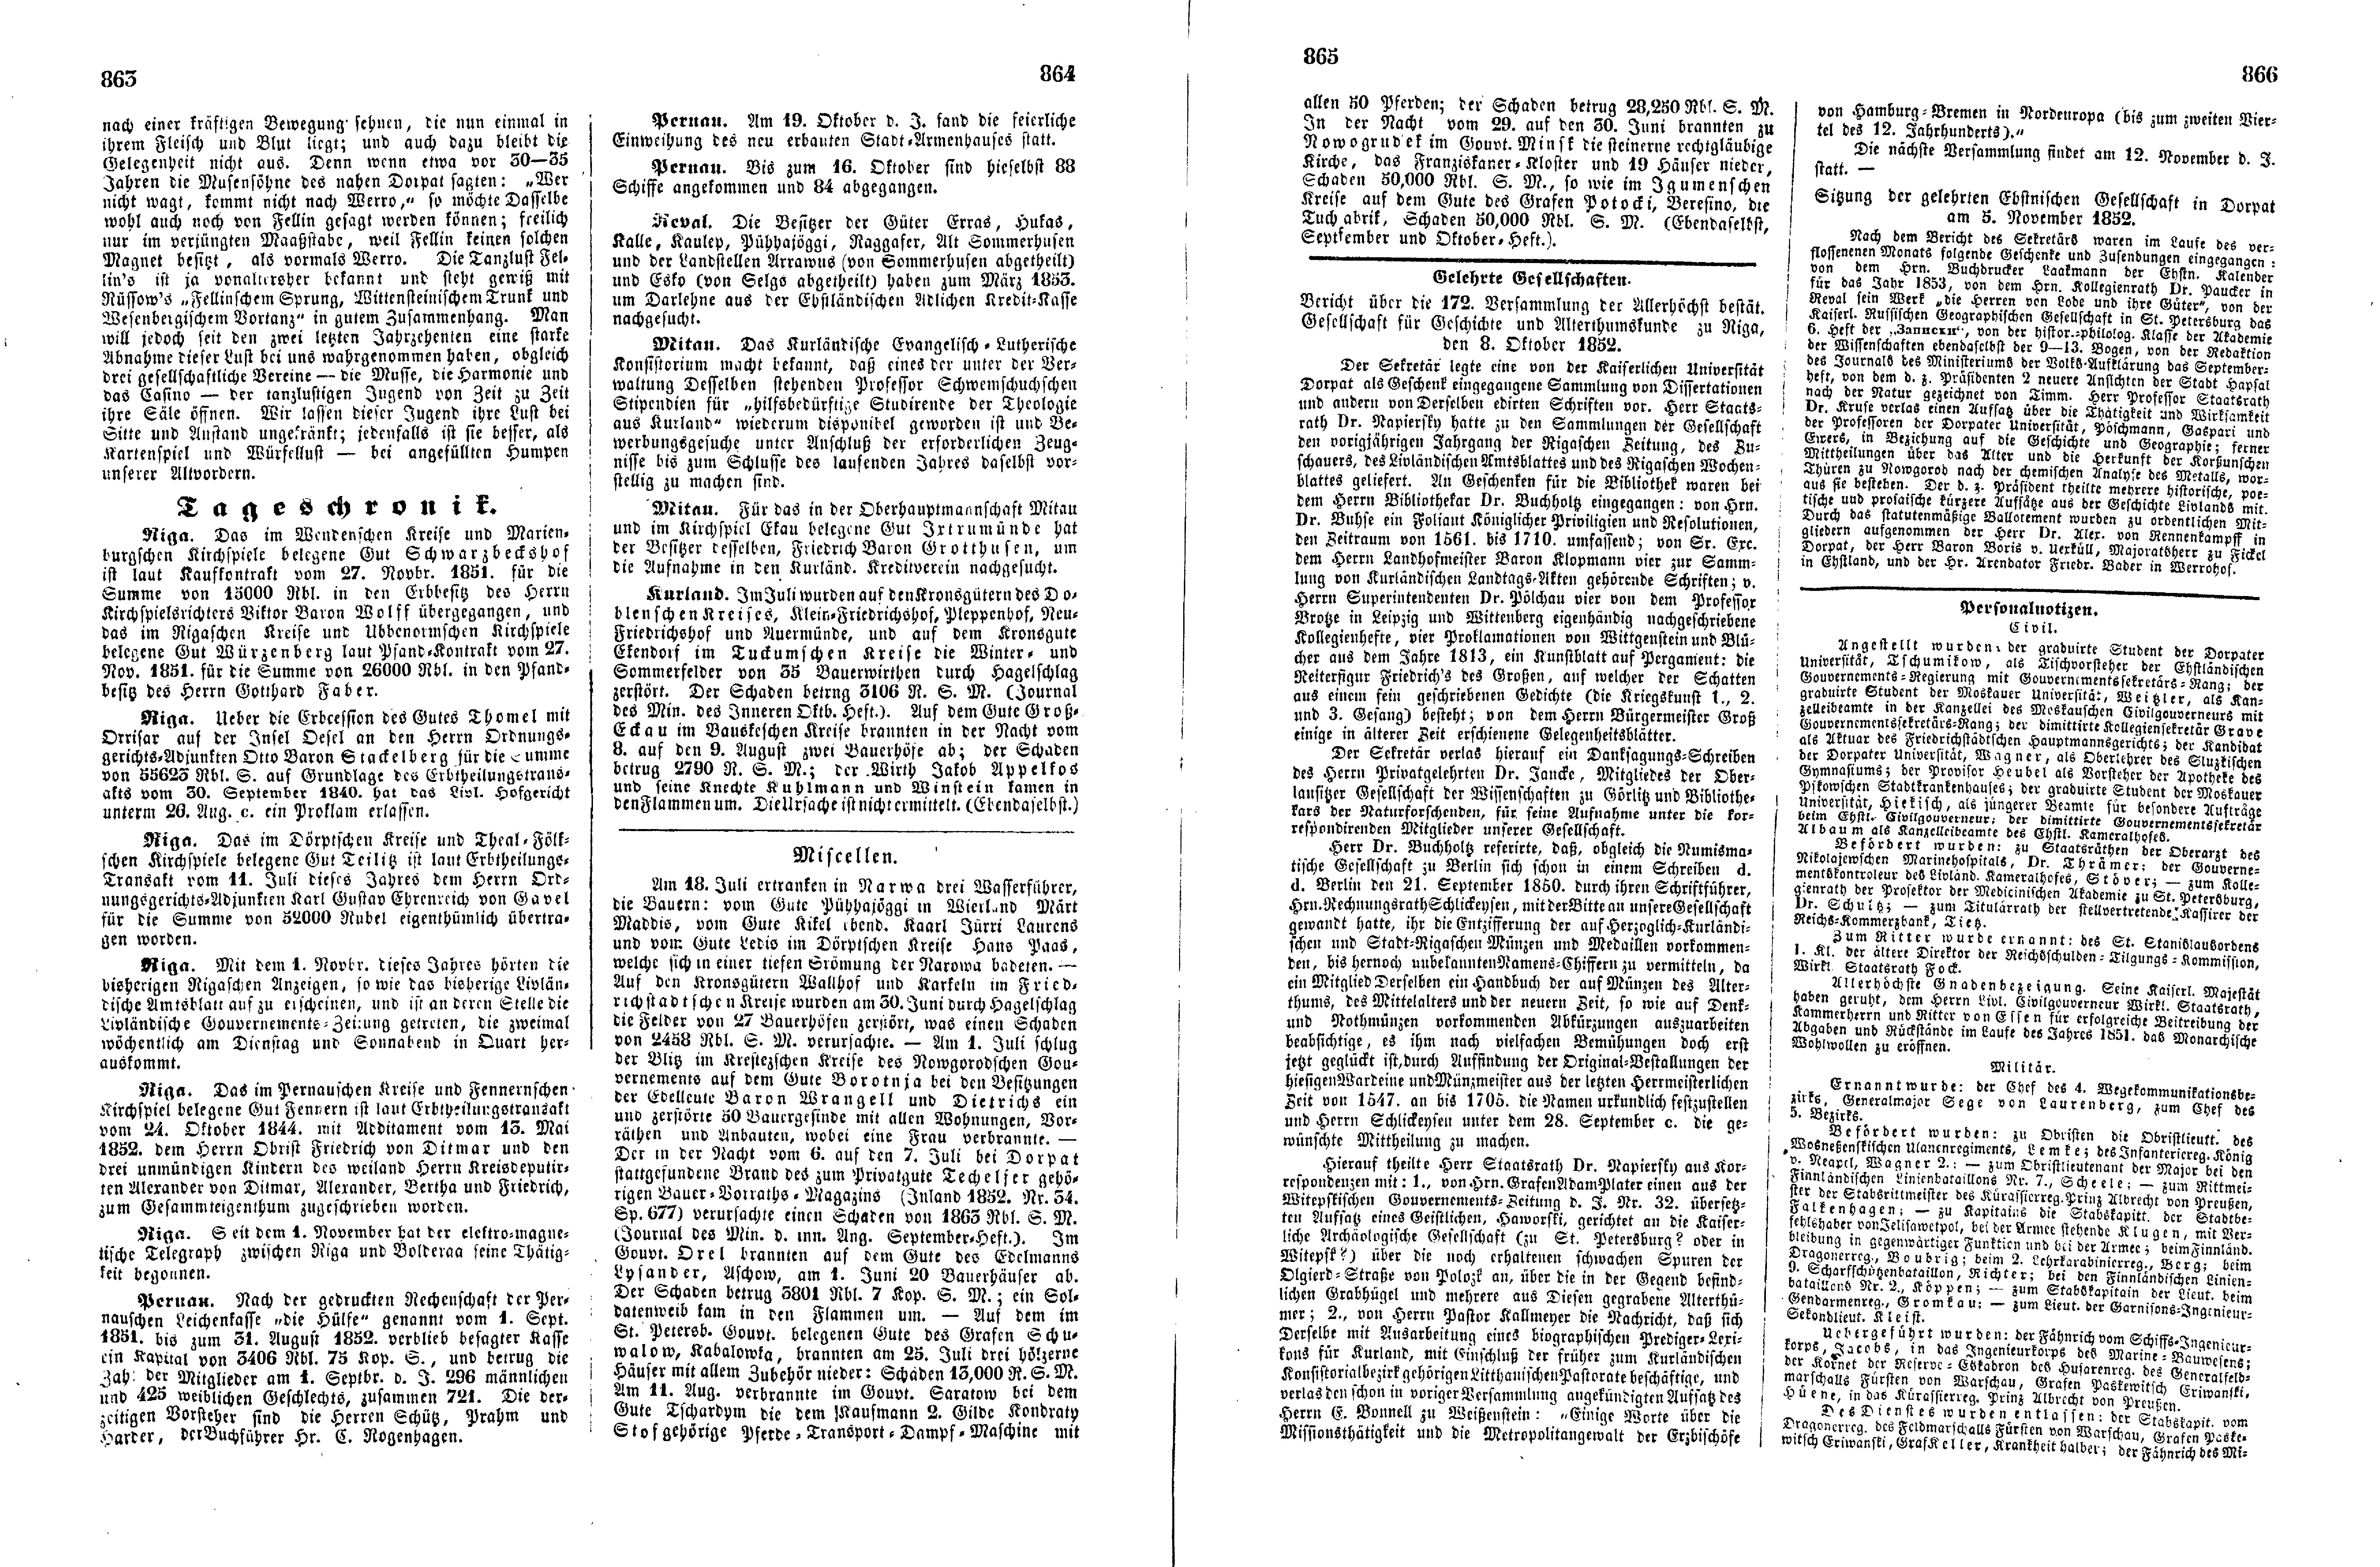 Das Inland [17] (1852) | 221. (863-866) Haupttext